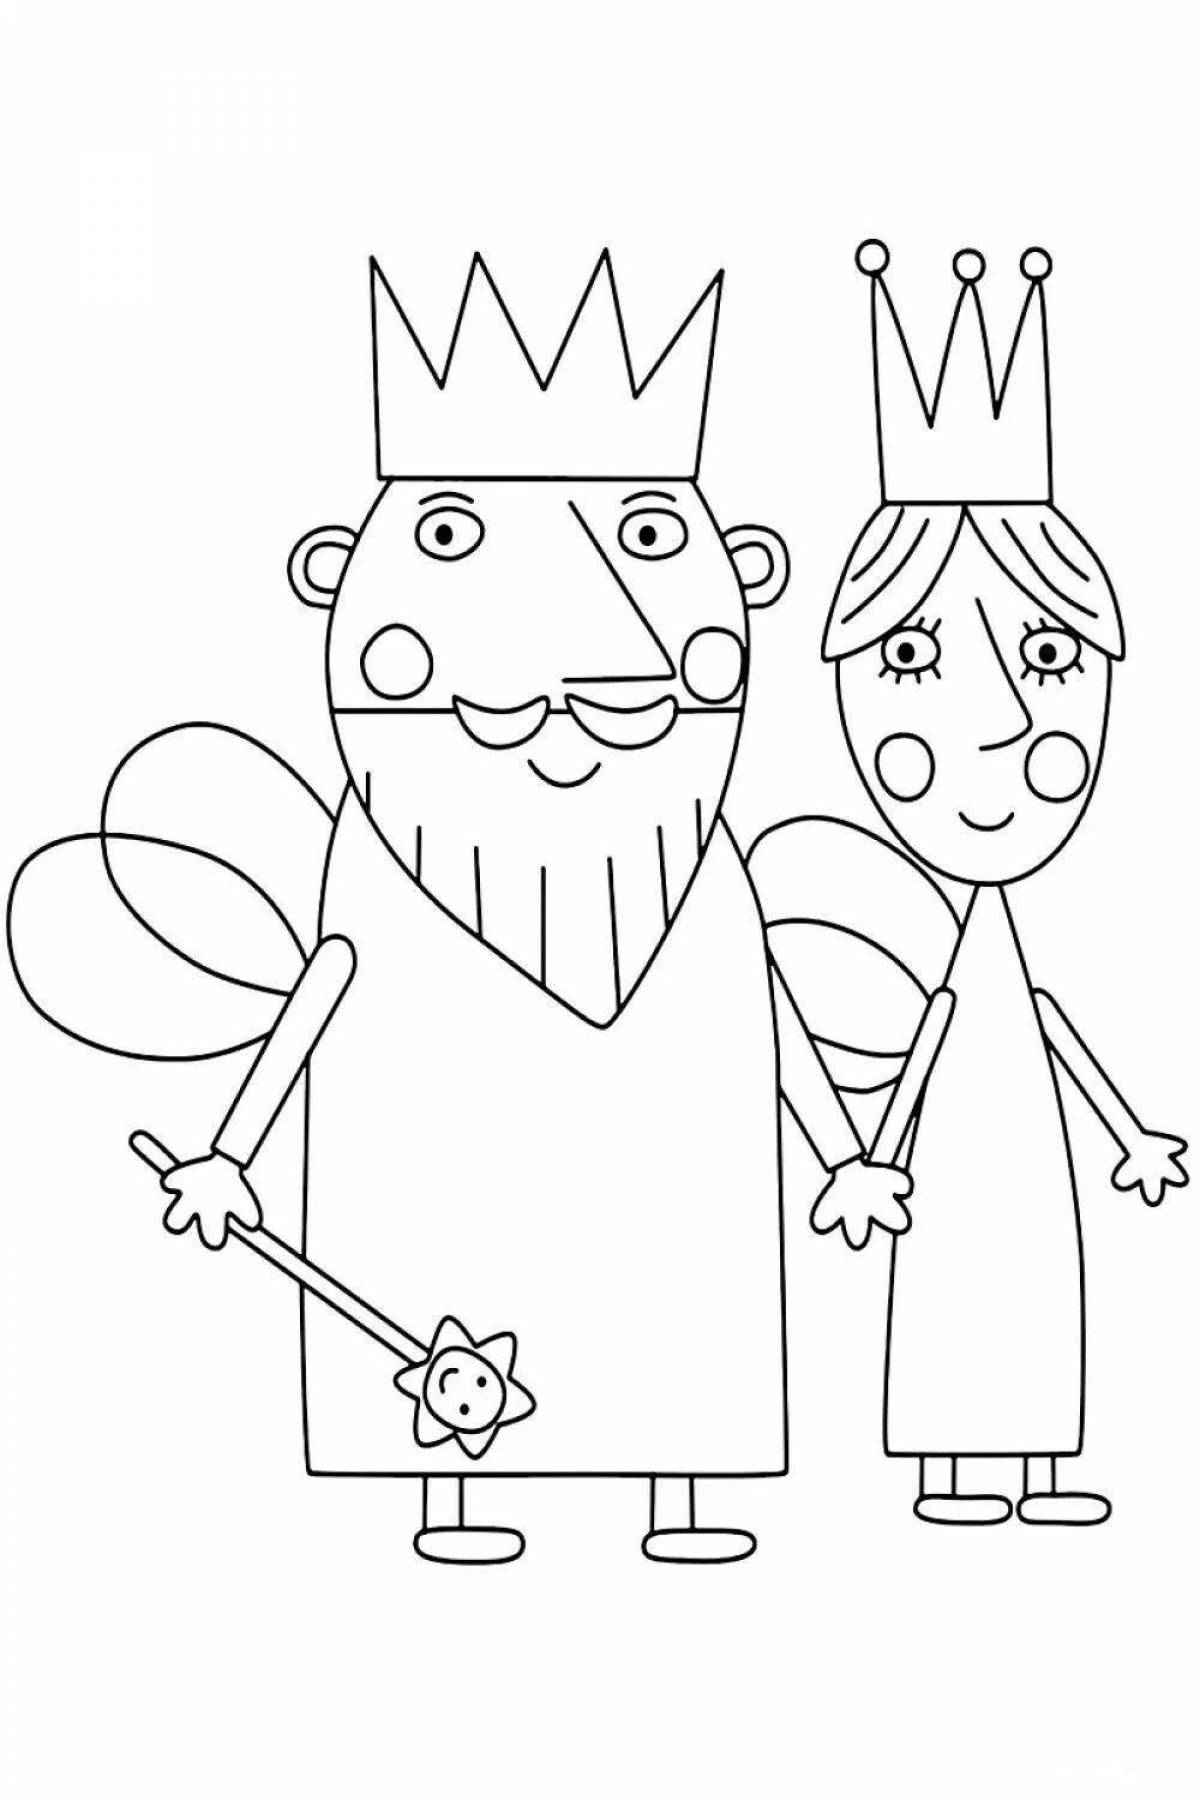 Богато украшенный король раскраски для детей